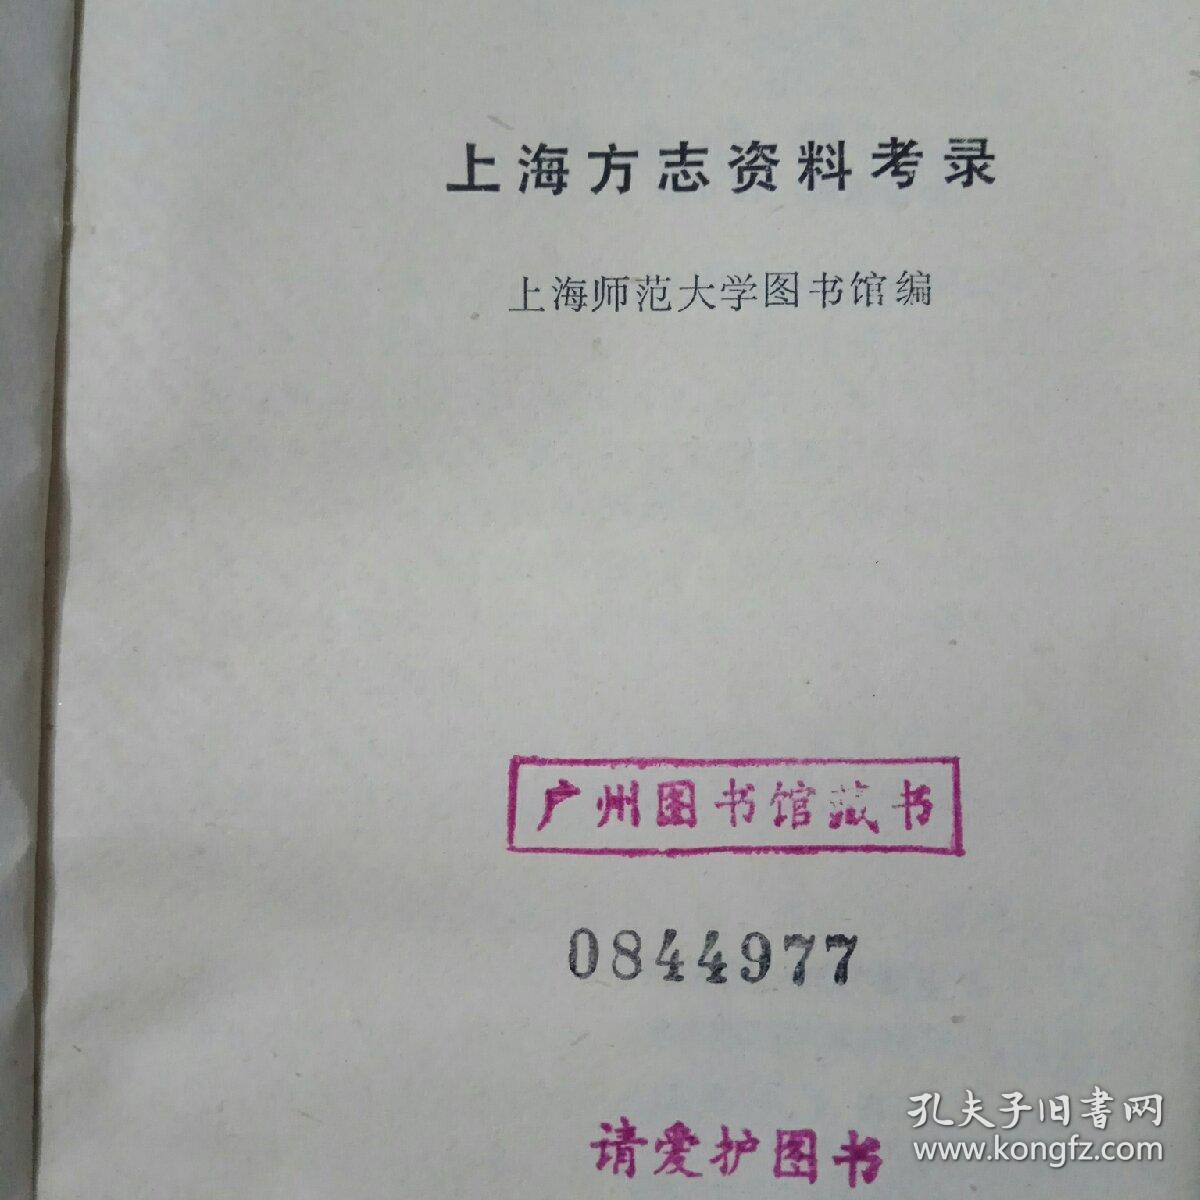 上海方志资料考录(馆藏书)